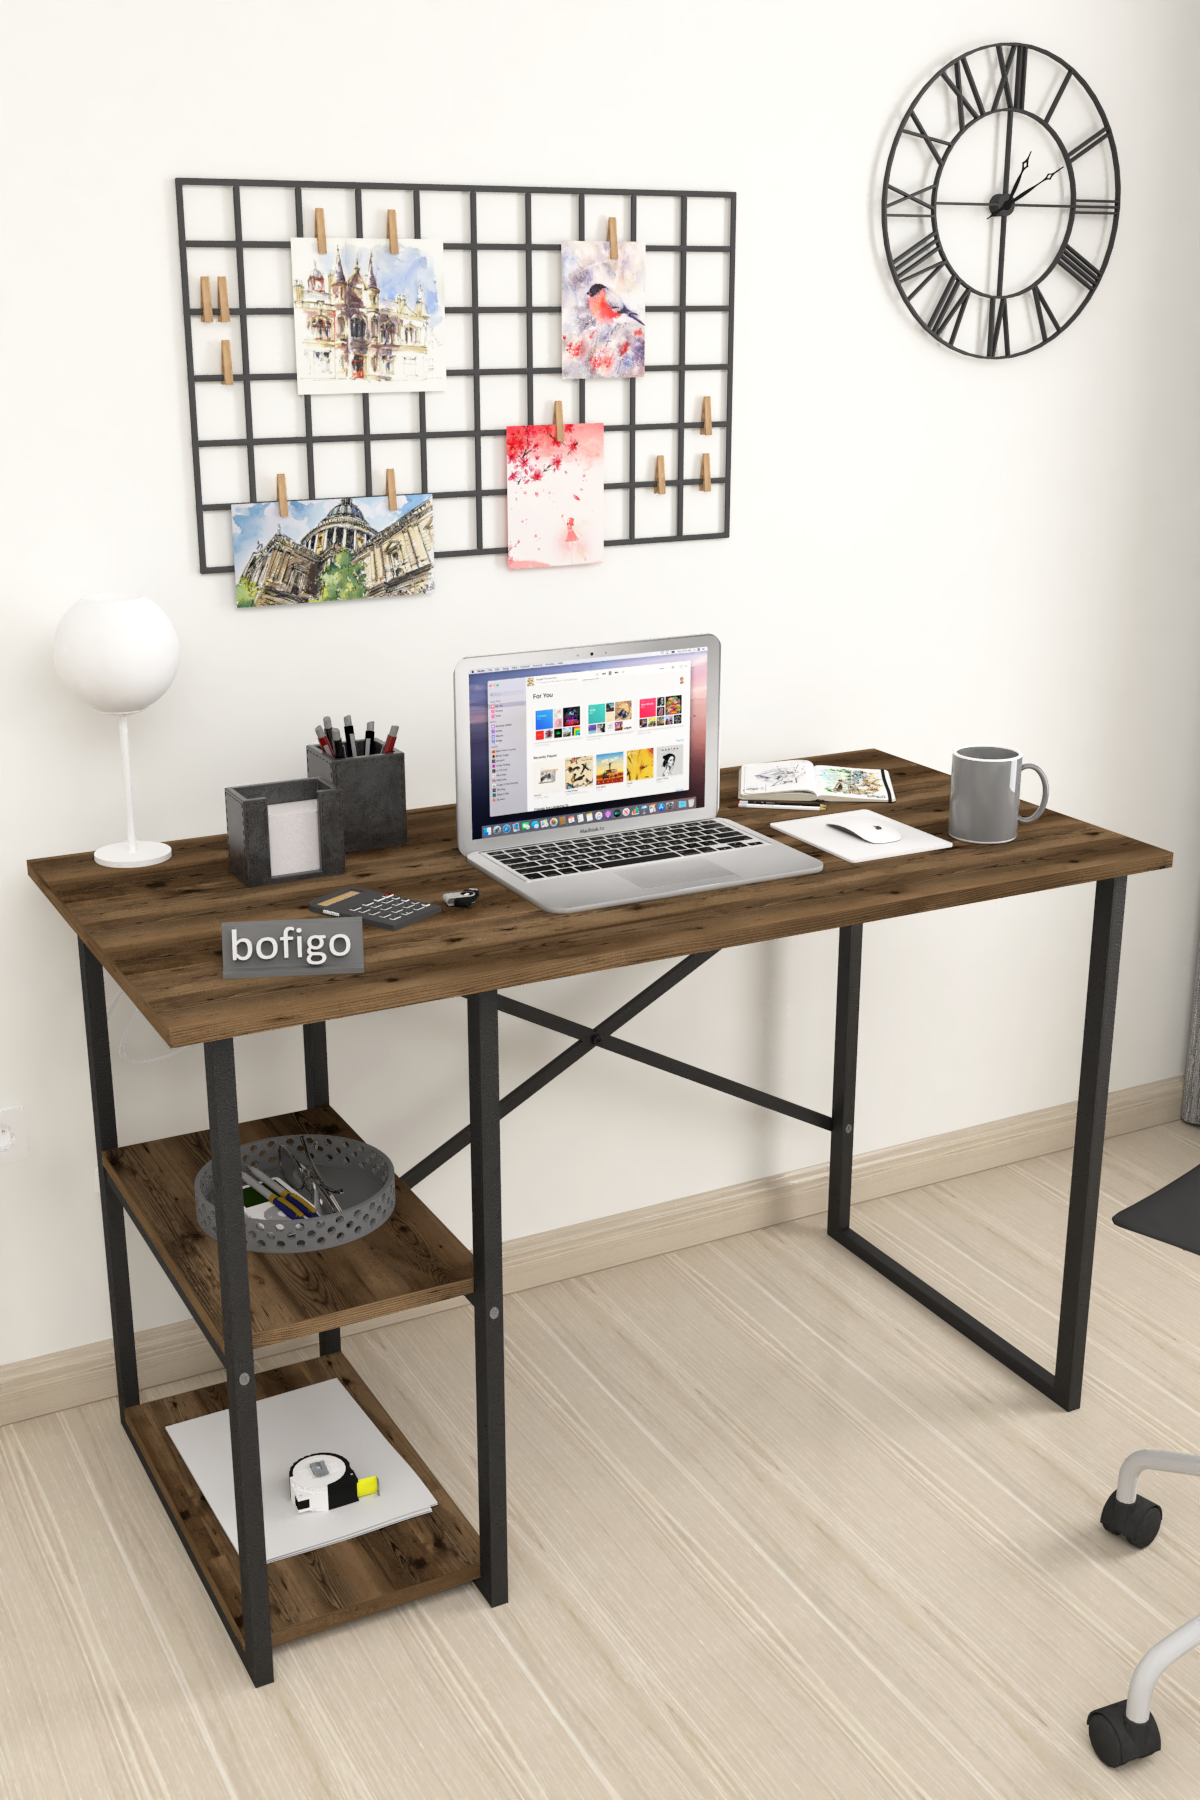 Bofigo 2 Shelf Desk 60x120 cm Patik